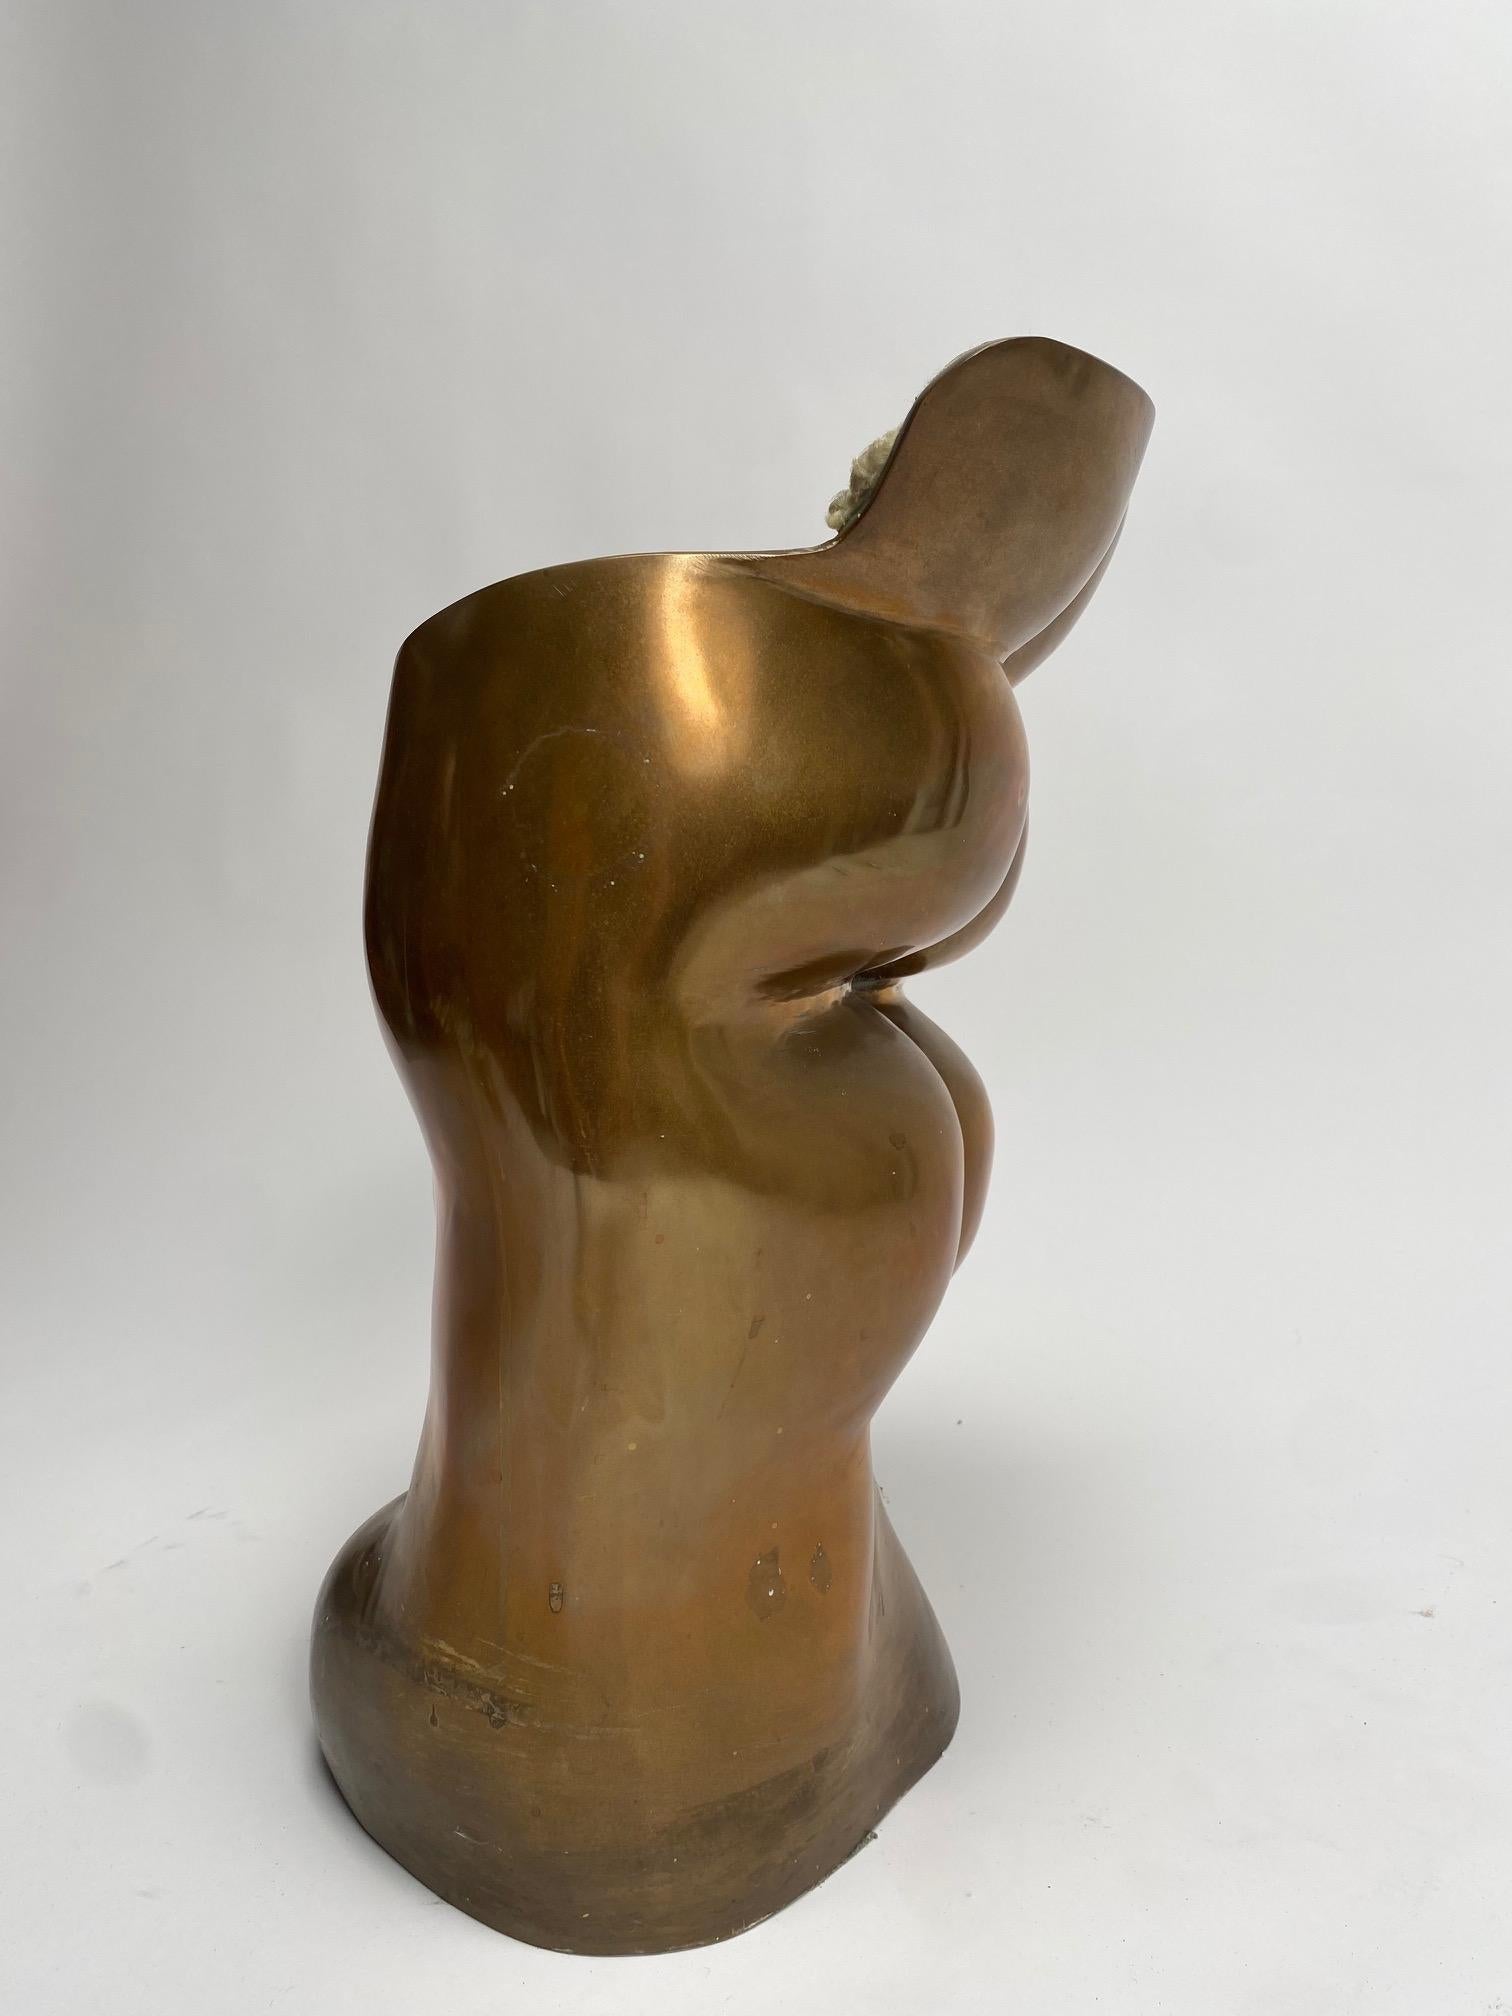 Tabouret sculpture en bronze Fausto par Novello Finotti, 1972 Production originale Gavina

Fausto, petit siège à la présence humanoïde, représente de manière exemplaire le concept d'Ultramobile, l'opération conçue par Dino Gavina en 1971, née dans